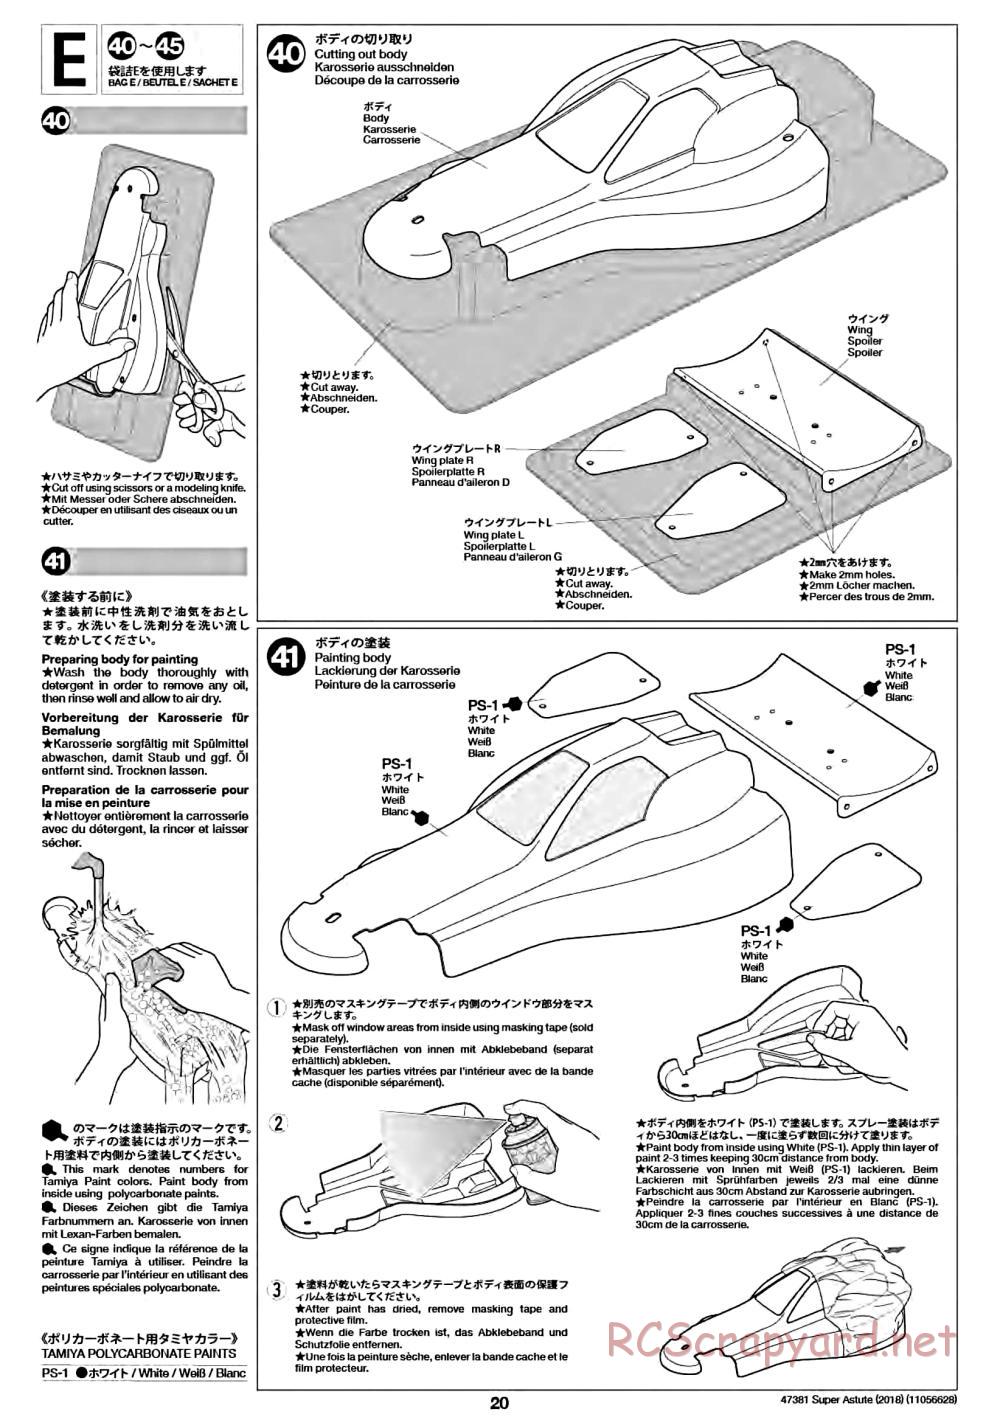 Tamiya - Super Astute (2018) Chassis - Manual - Page 20